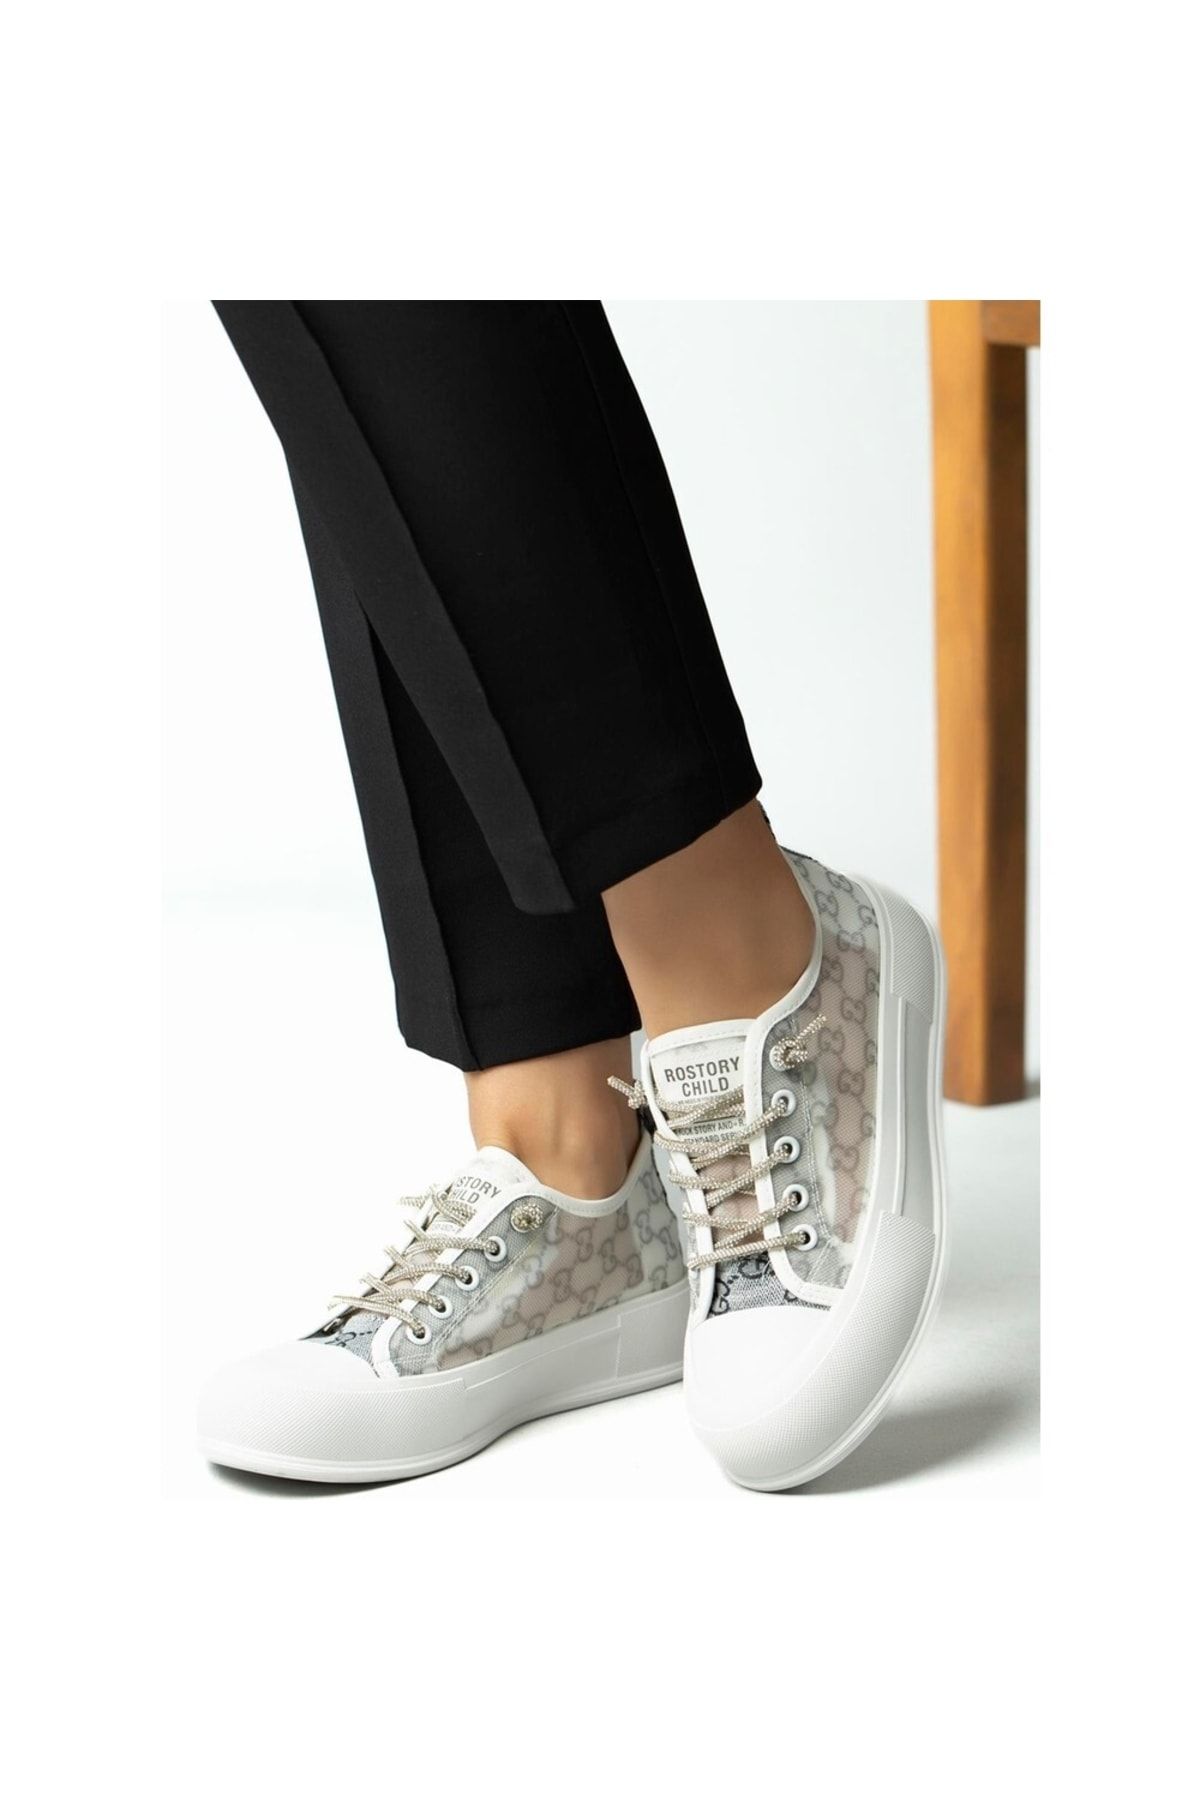 Guja 23Y384 Kadın Gri Beyaz Tüllü Taşlı Platform Kalın Ortopedik Taban Sneaker Yürüyüş Spor Ayakkabı